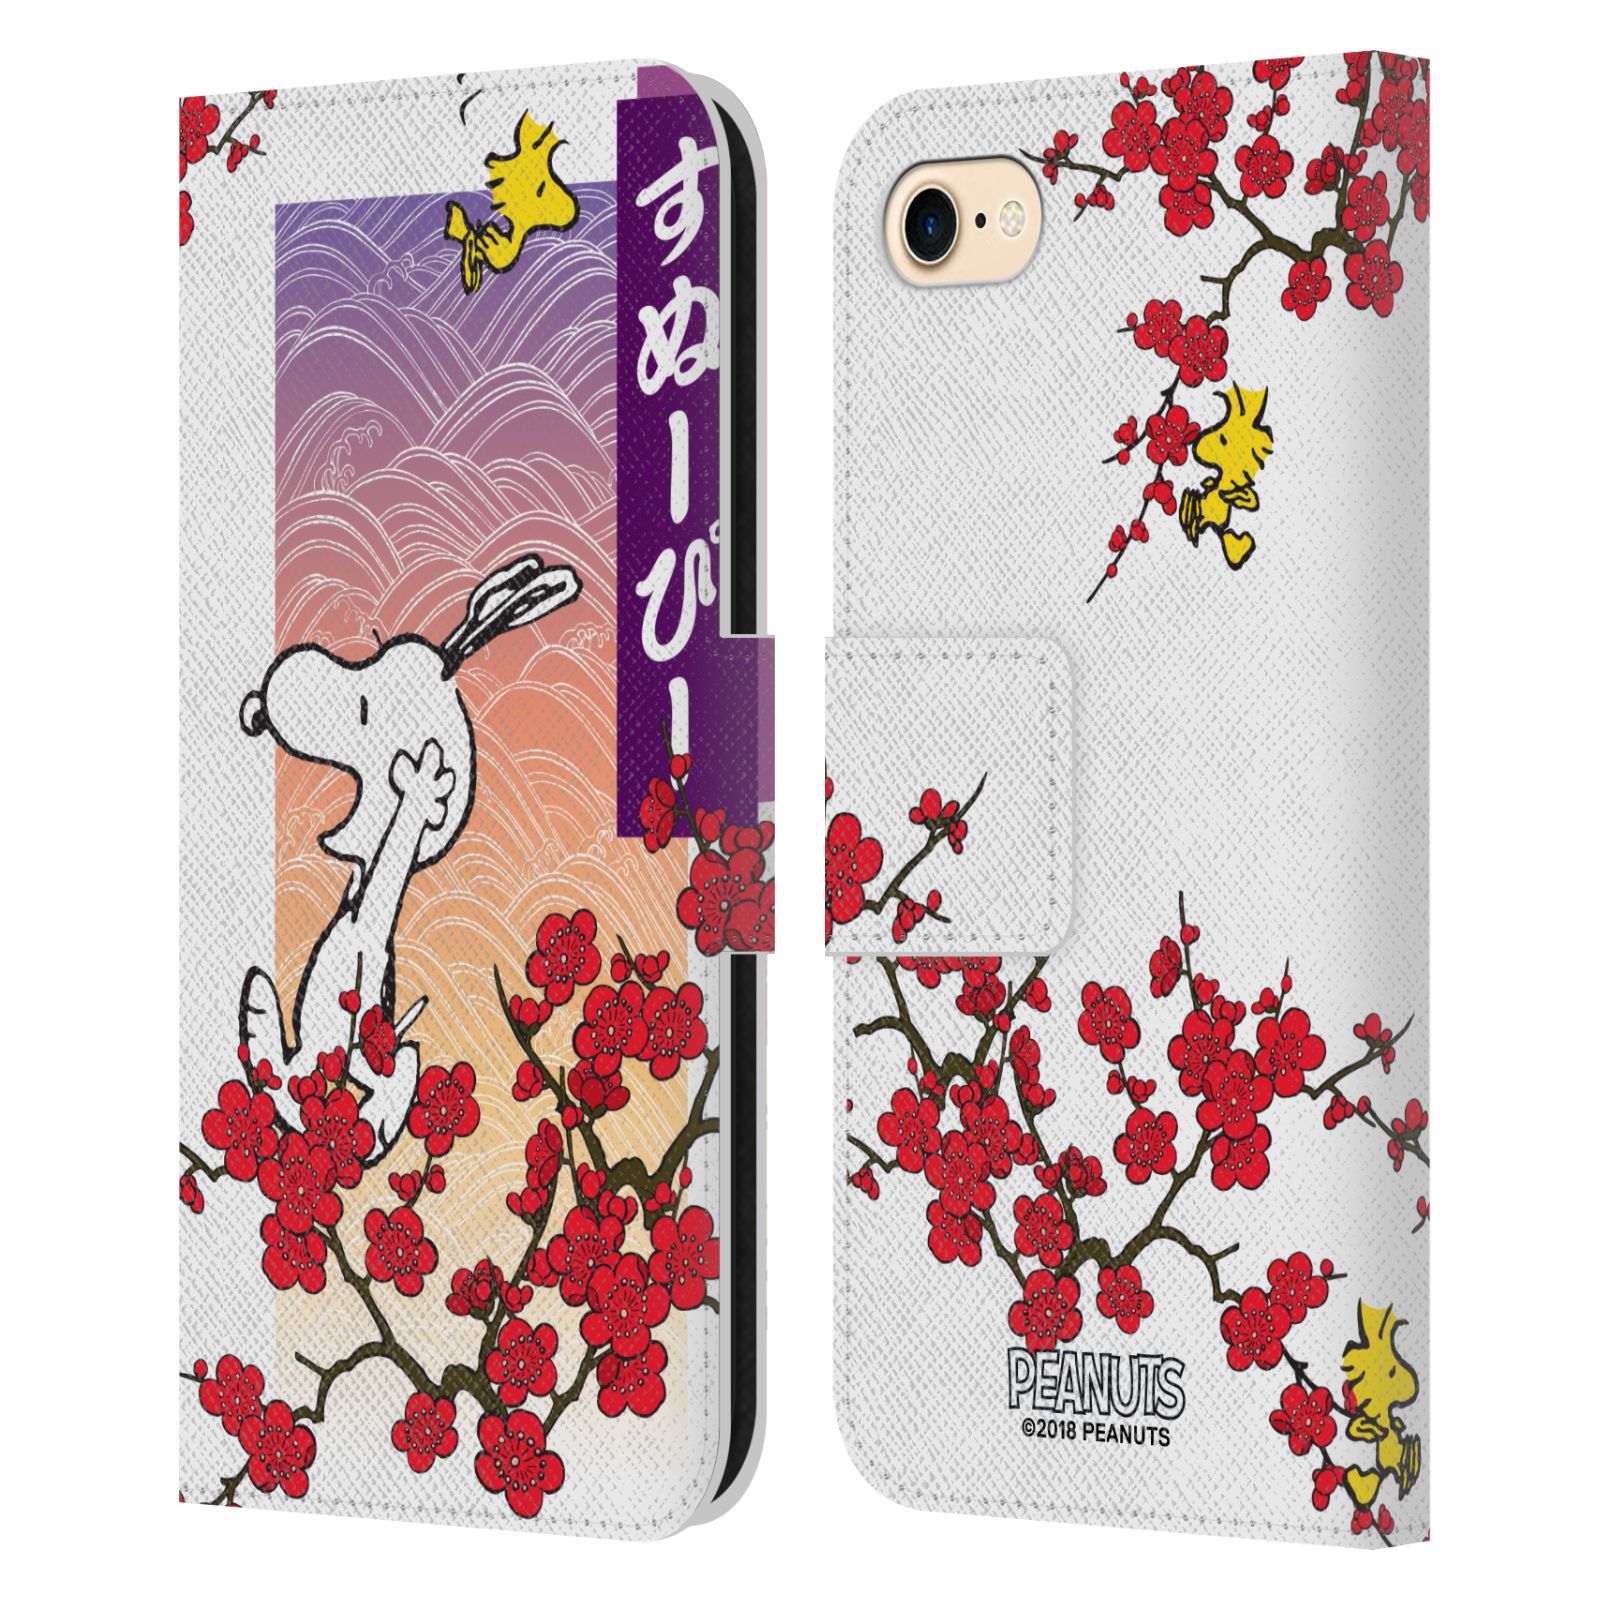 Pouzdro na mobil Apple Iphone 7 / 8 - Head Case - Peanuts - Snoopy, ptáček Woodstock rozkvetlá třešeň